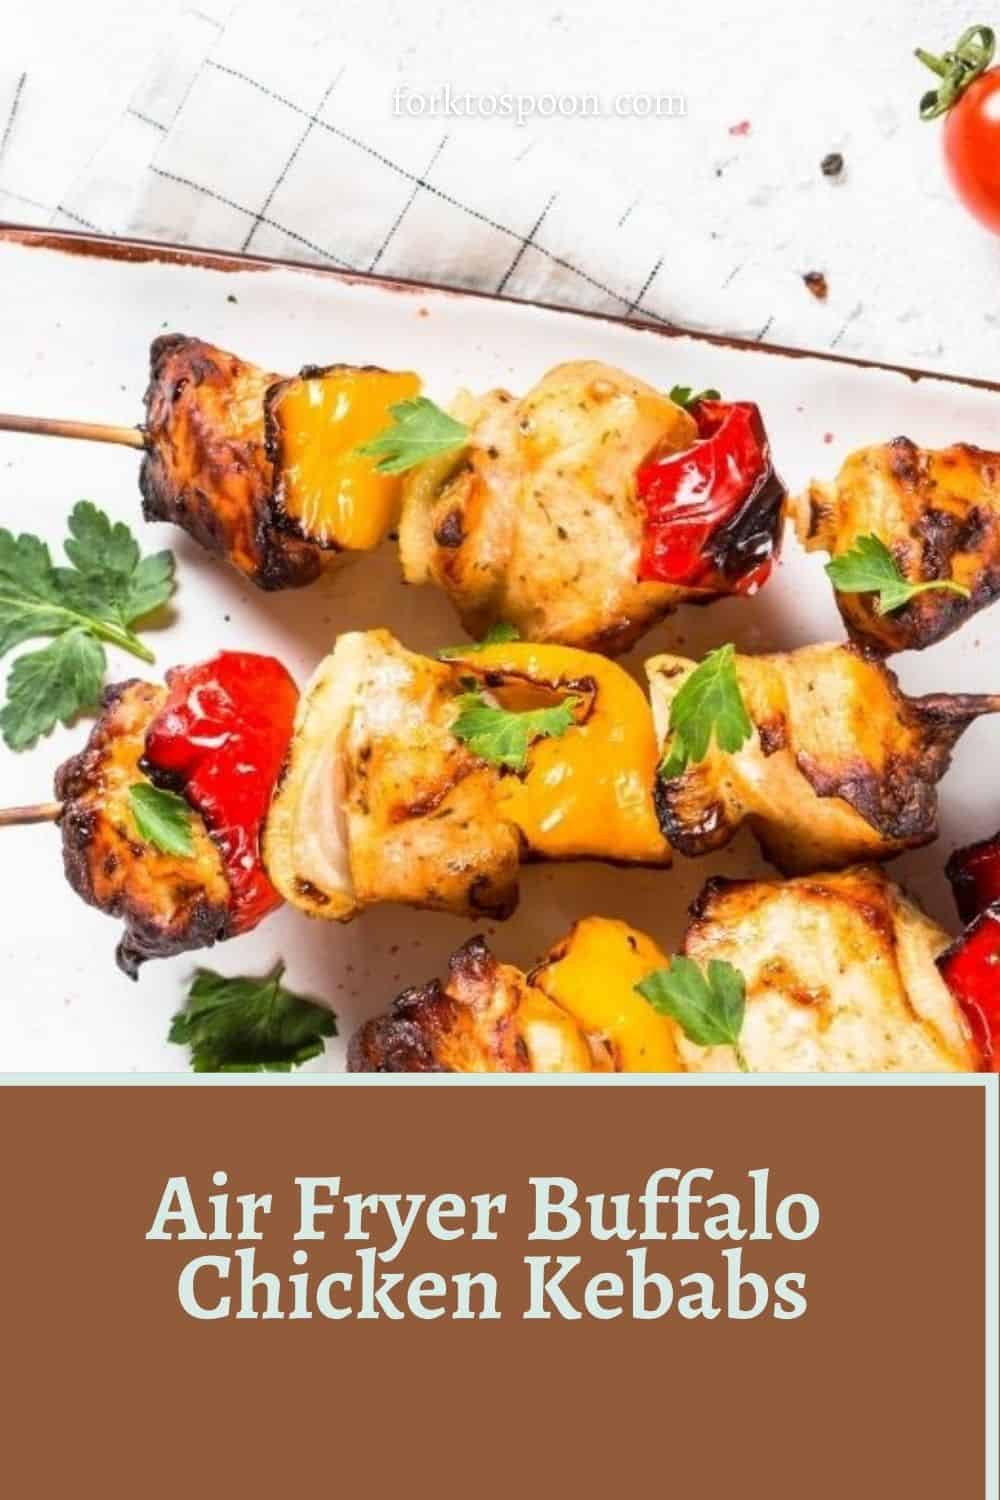 Air Fryer Buffalo Chicken Kebabs